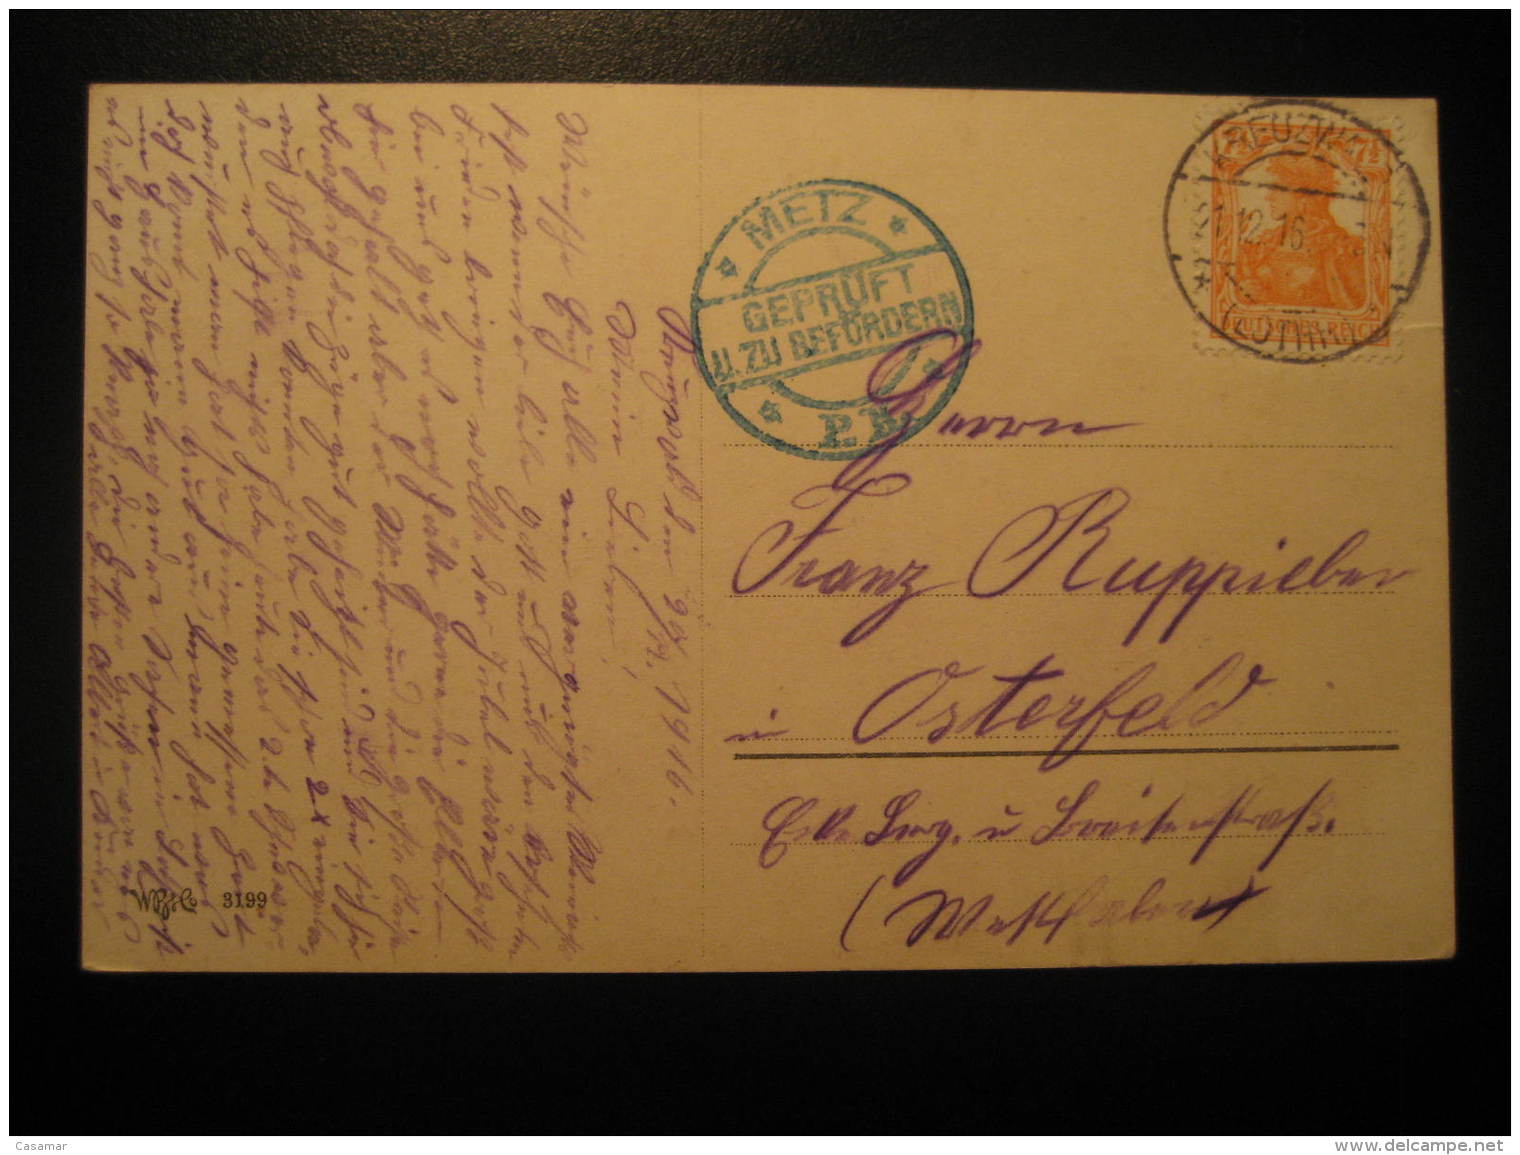 1916 KREUZWALD Lothringen To Osterfeld METZ Gepruft Censor Censored Cancel WW1 Militar Post Card Germany Deutsches Reich - Briefe U. Dokumente